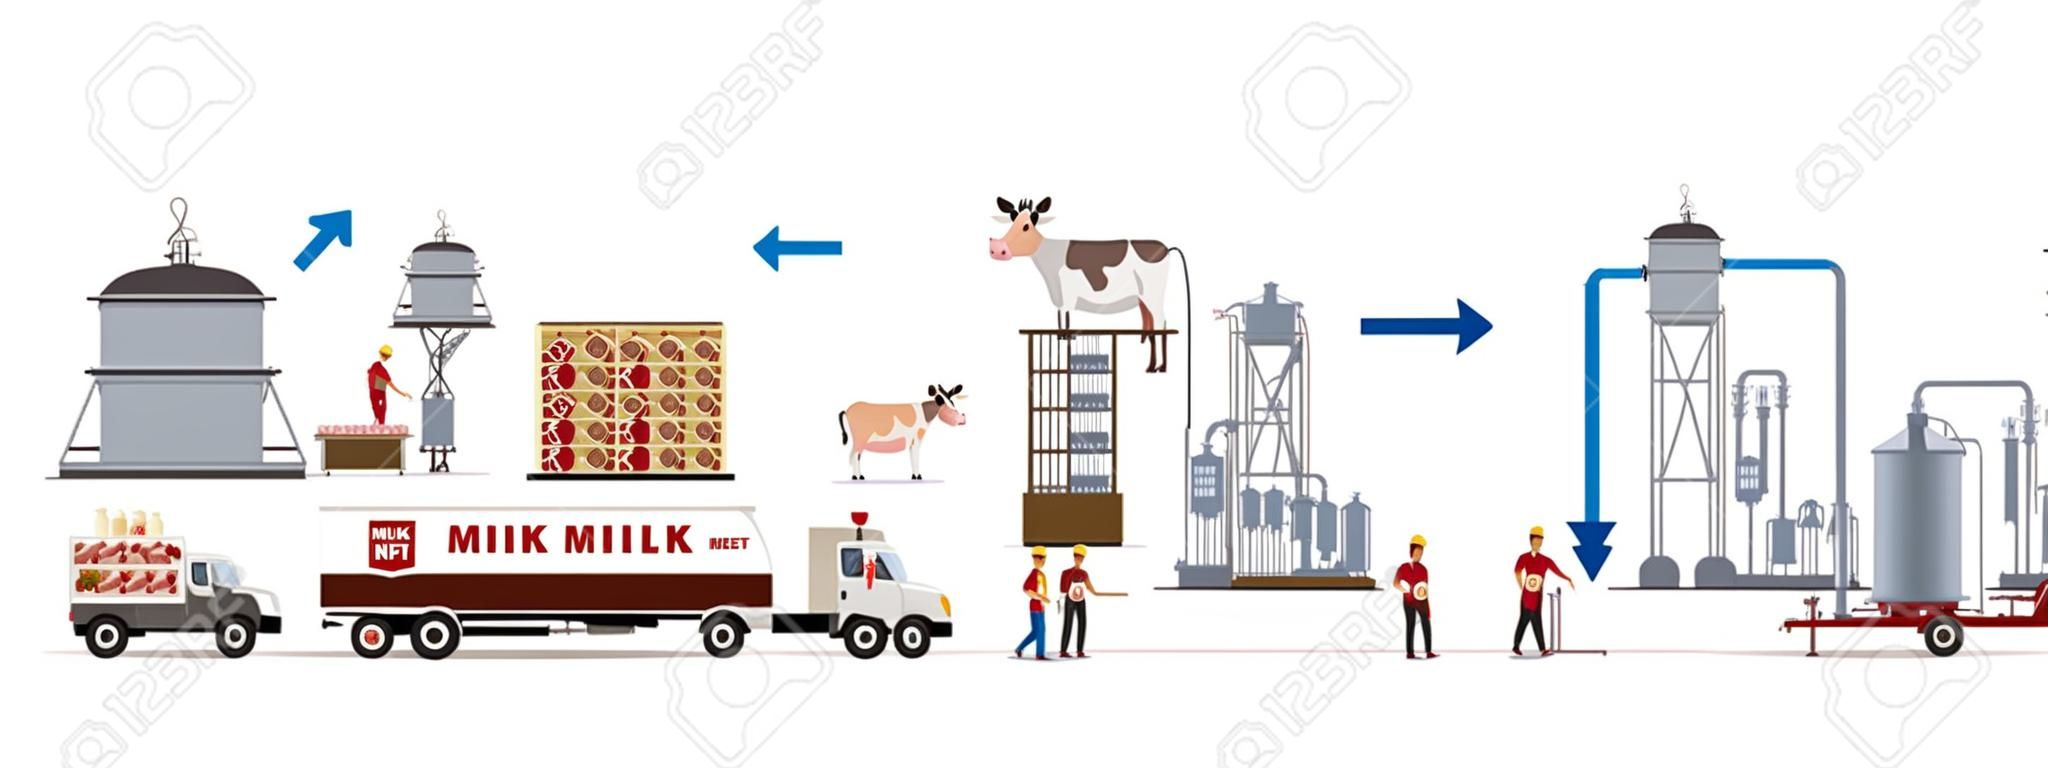 Fábrica de leche y carne con máquinas automáticas y trabajadores. Ilustración vectorial